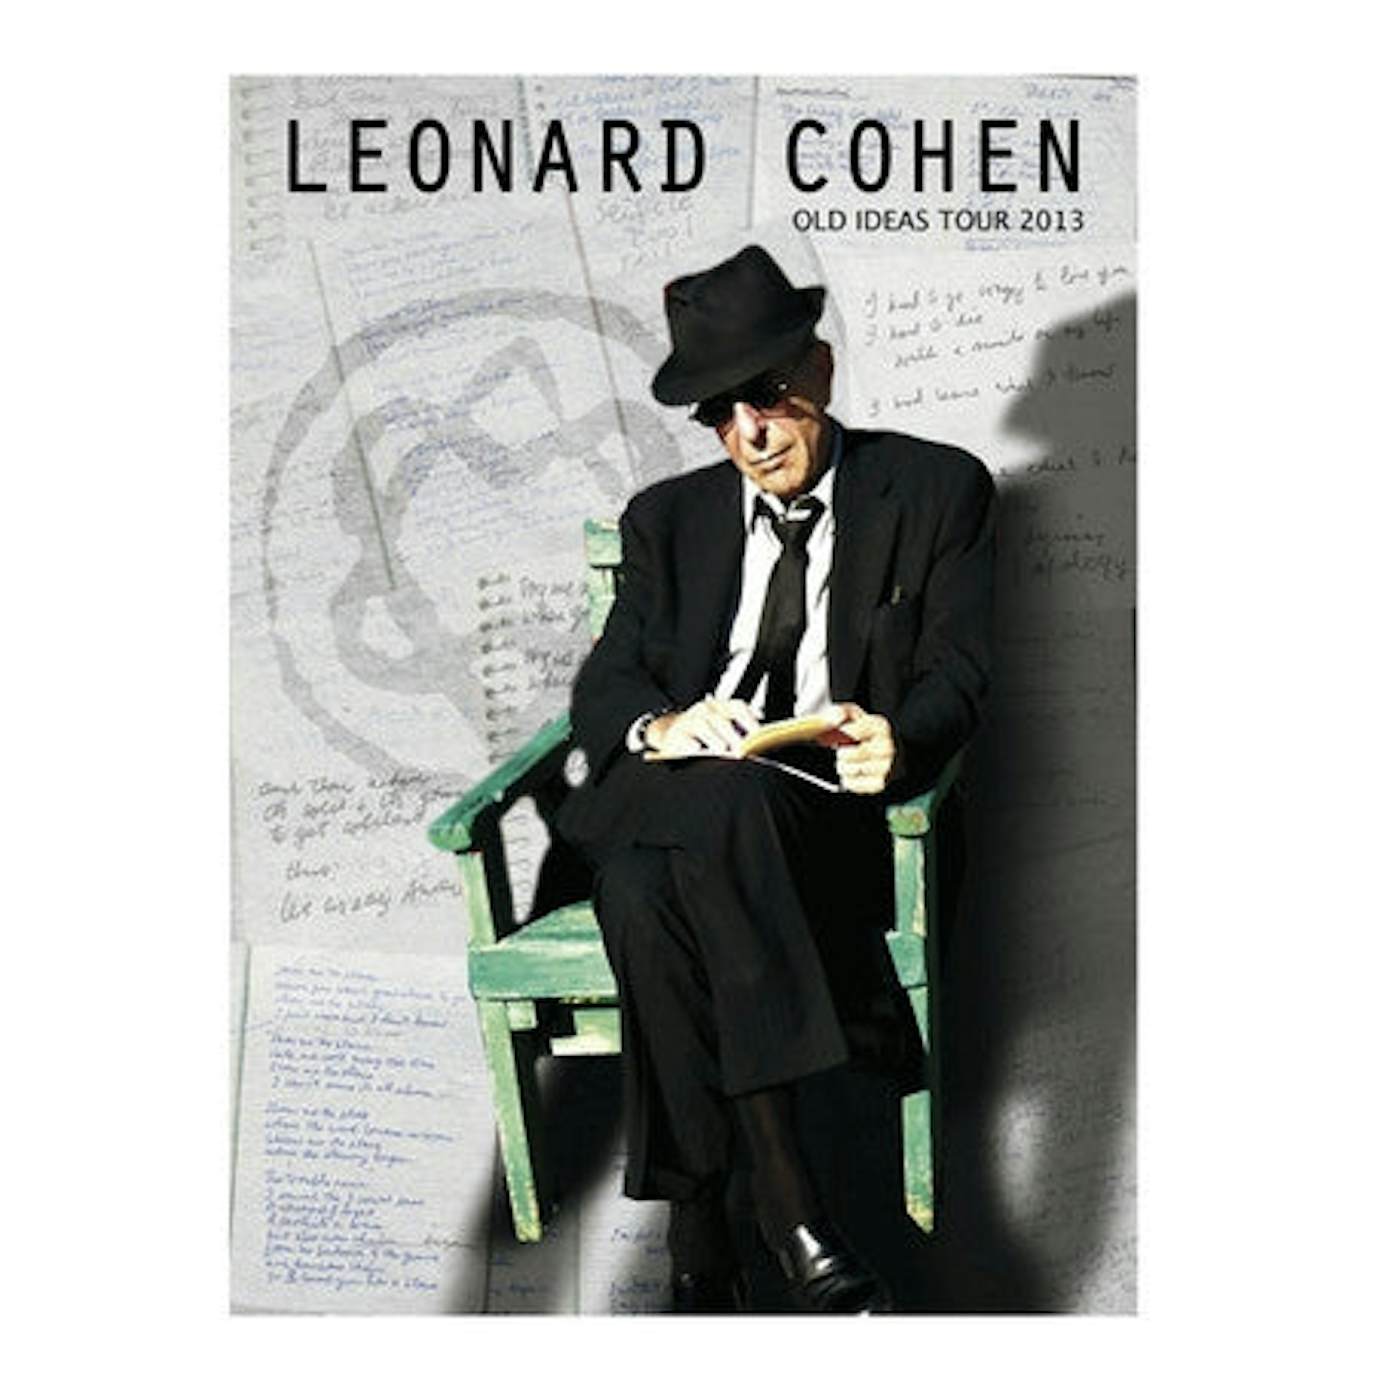 Leonard Cohen Tour 2013 Programme